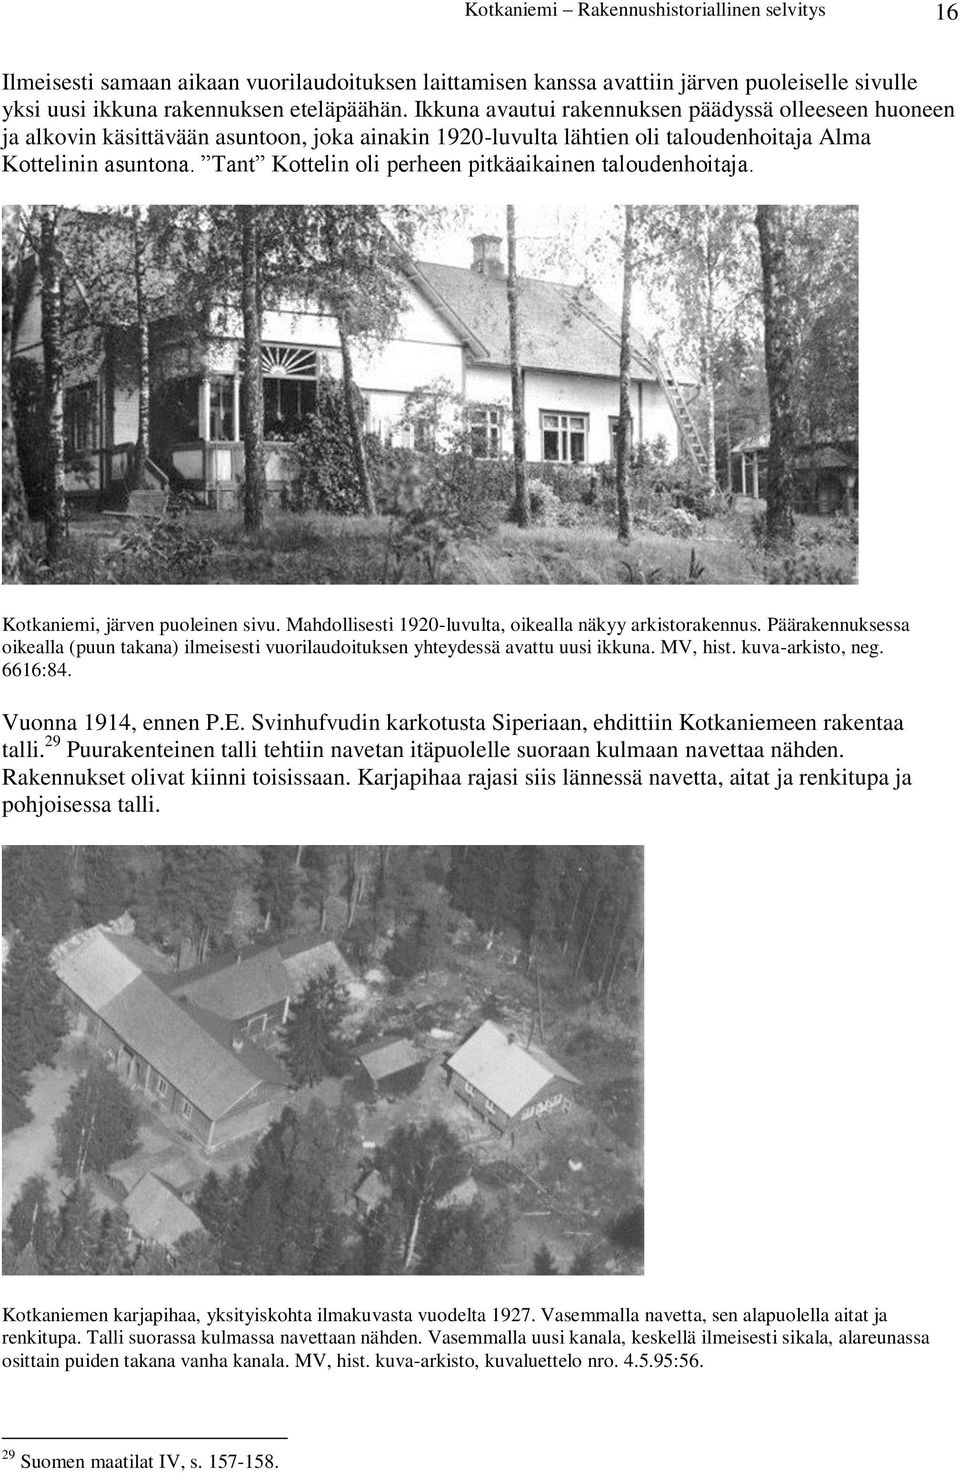 Tant Kottelin oli perheen pitkäaikainen taloudenhoitaja. Kotkaniemi, järven puoleinen sivu. Mahdollisesti 1920-luvulta, oikealla näkyy arkistorakennus.